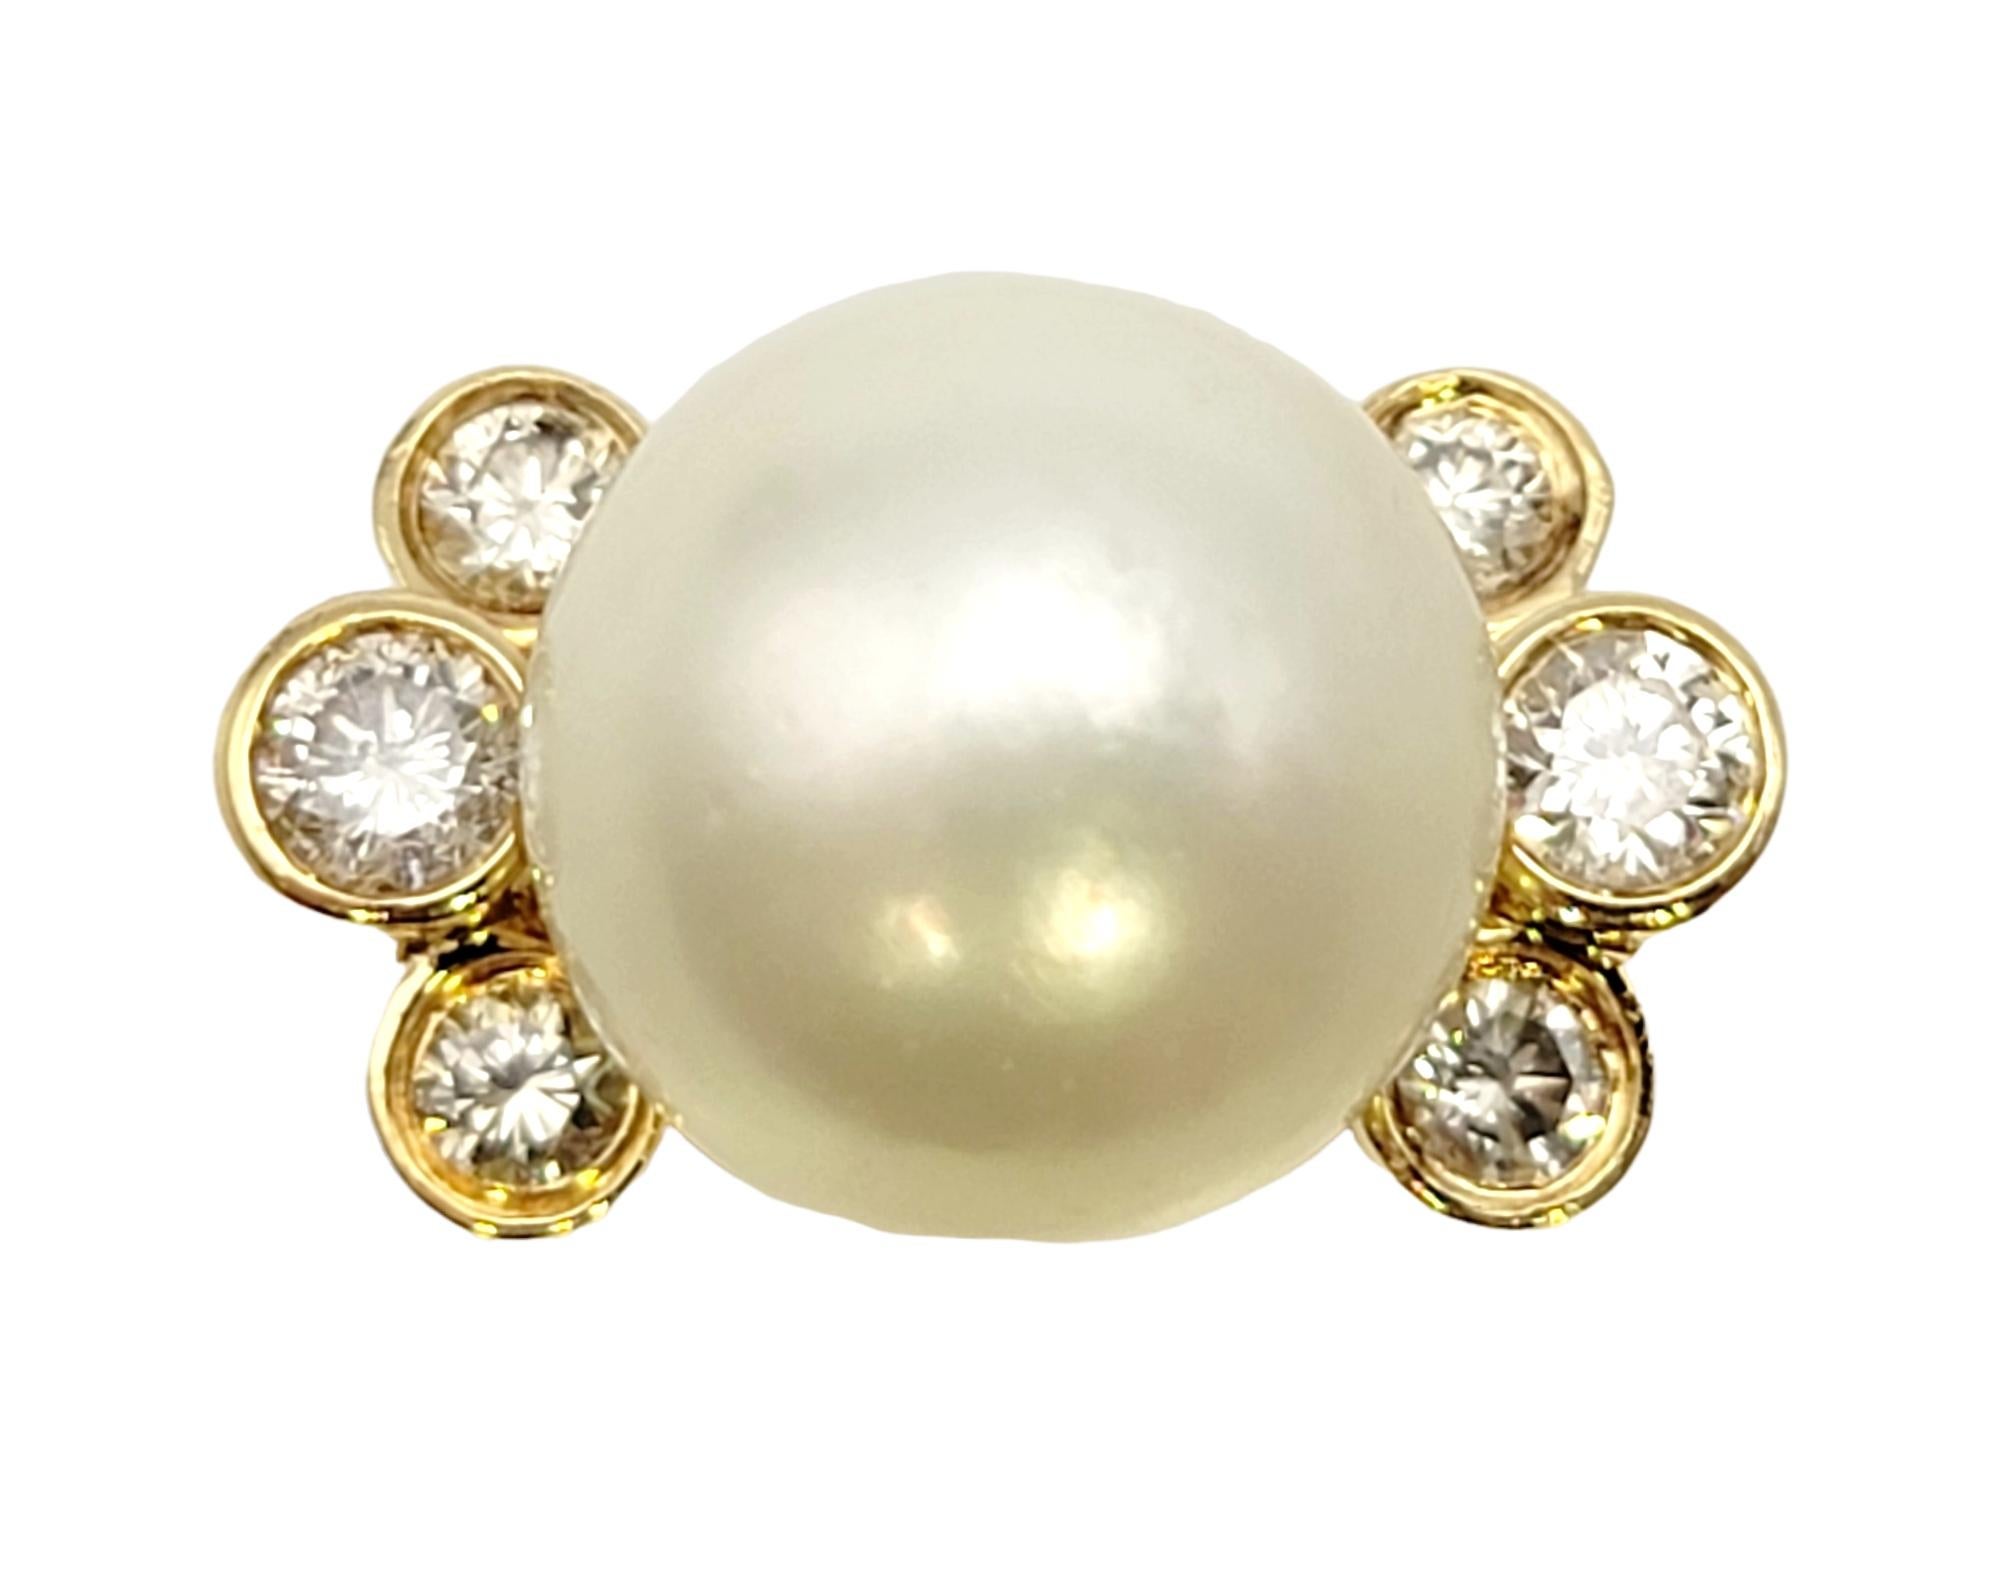 Ringgröße: 6.25

Raffinierter und atemberaubender Statement-Ring mit Südseeperlen und Diamanten. Die unglaubliche, schillernde weiße 12-mm-Perle sitzt hoch in der Mitte und fordert die Aufmerksamkeit des Betrachters. Flankiert wird die Perle von